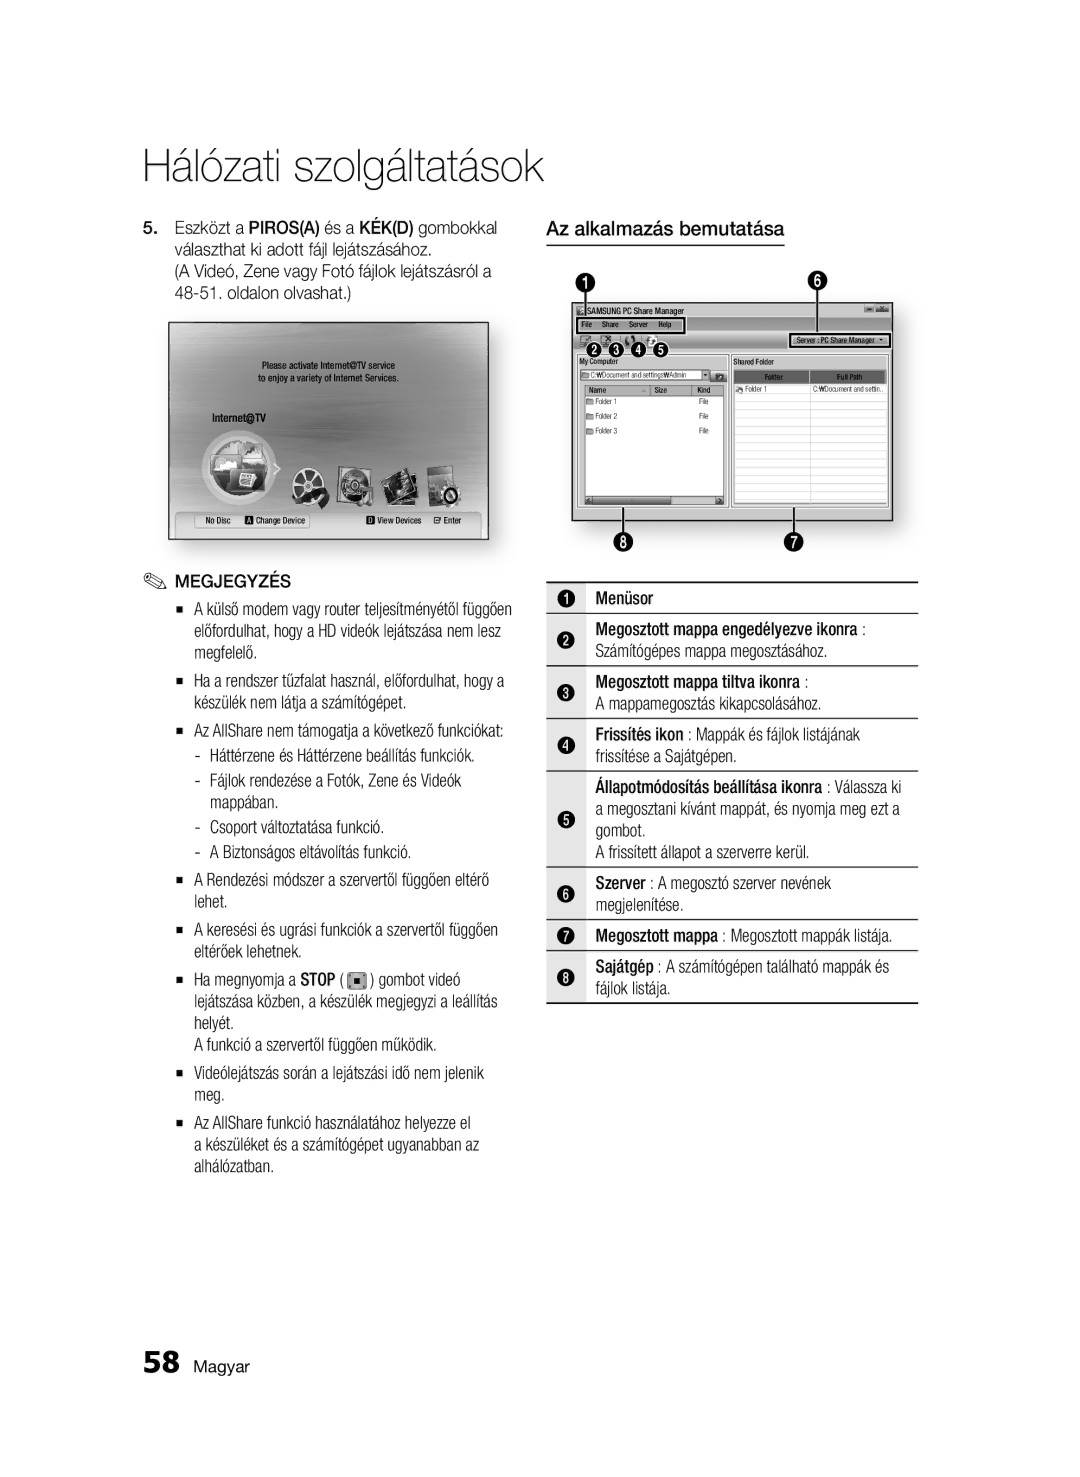 Samsung BD-C7500W/EDC manual Az alkalmazás bemutatása, Frissítése a Sajátgépen, Háttérzene és Háttérzene beállítás funkciók 